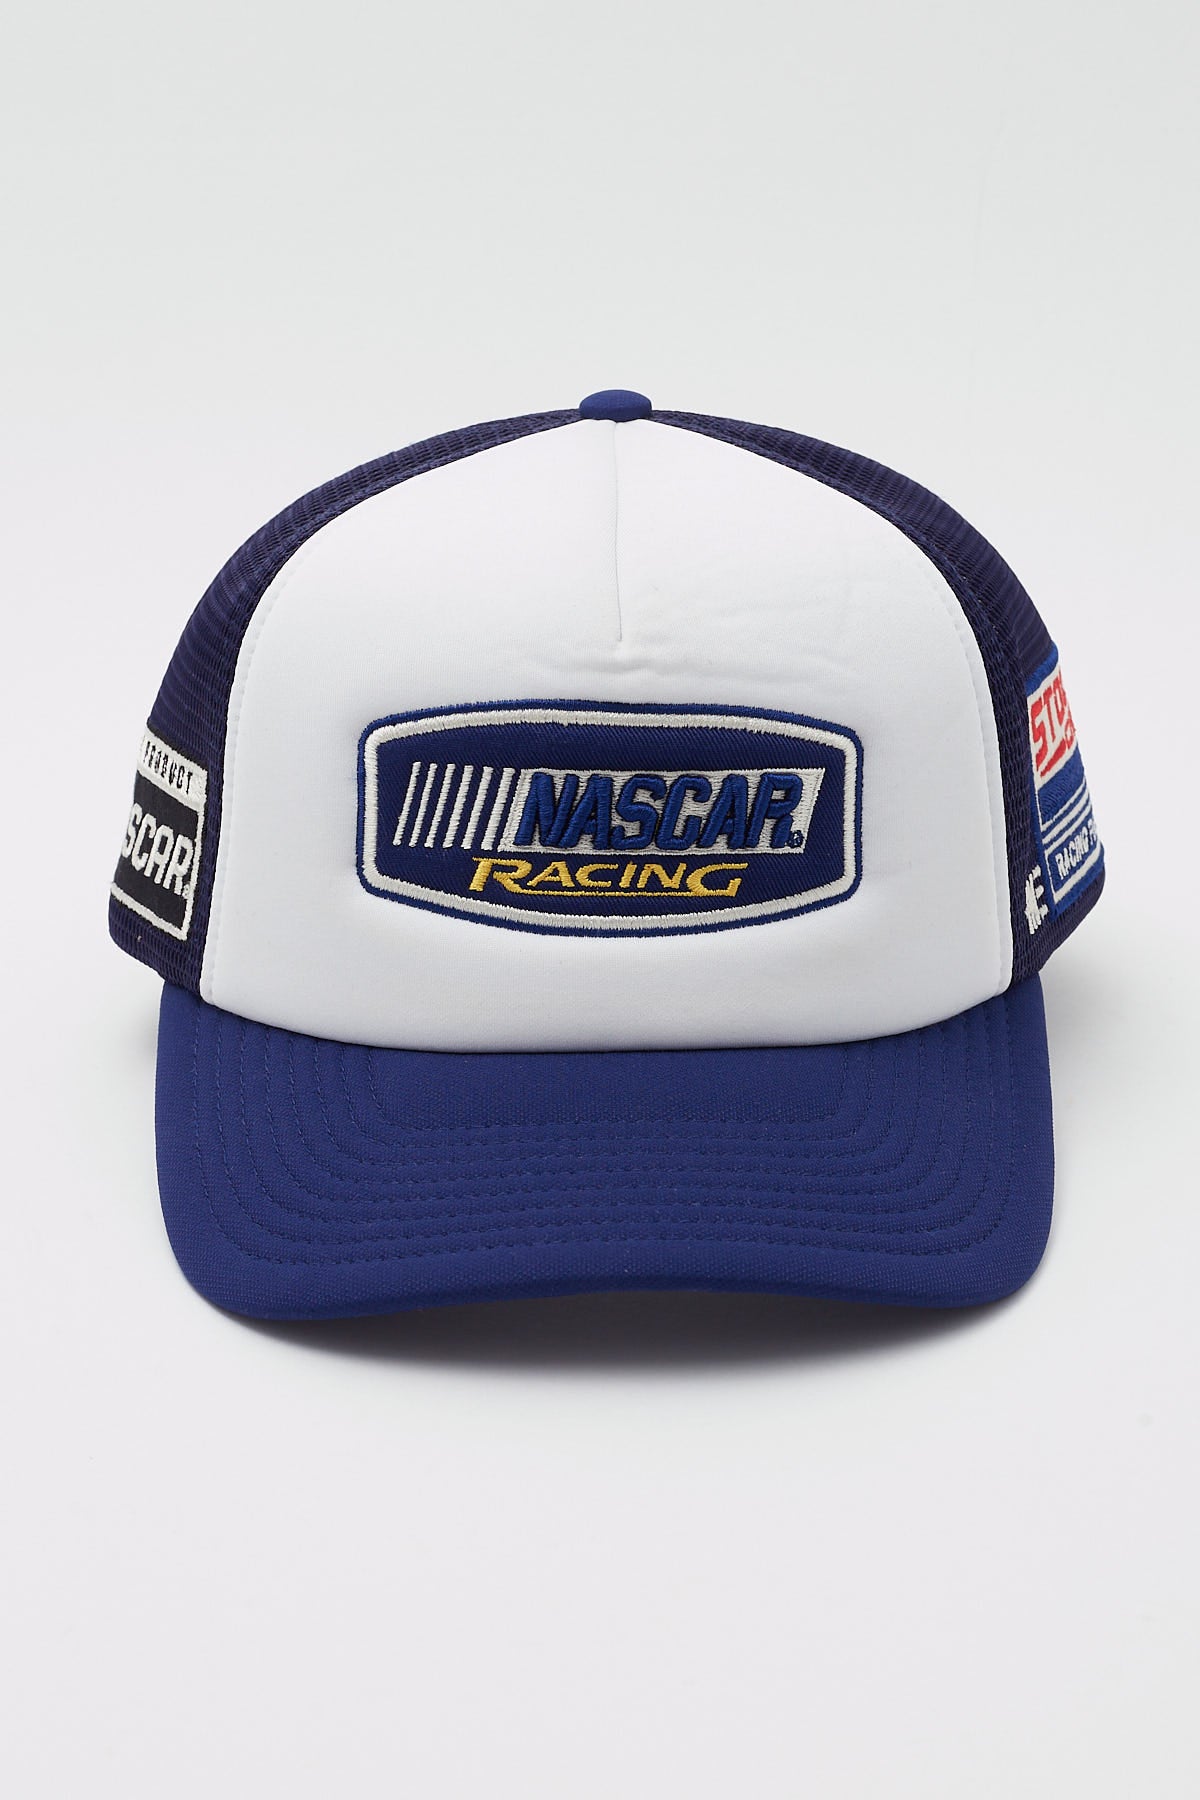 Tne Nascar Racing Sponsor Trucker White/Blue